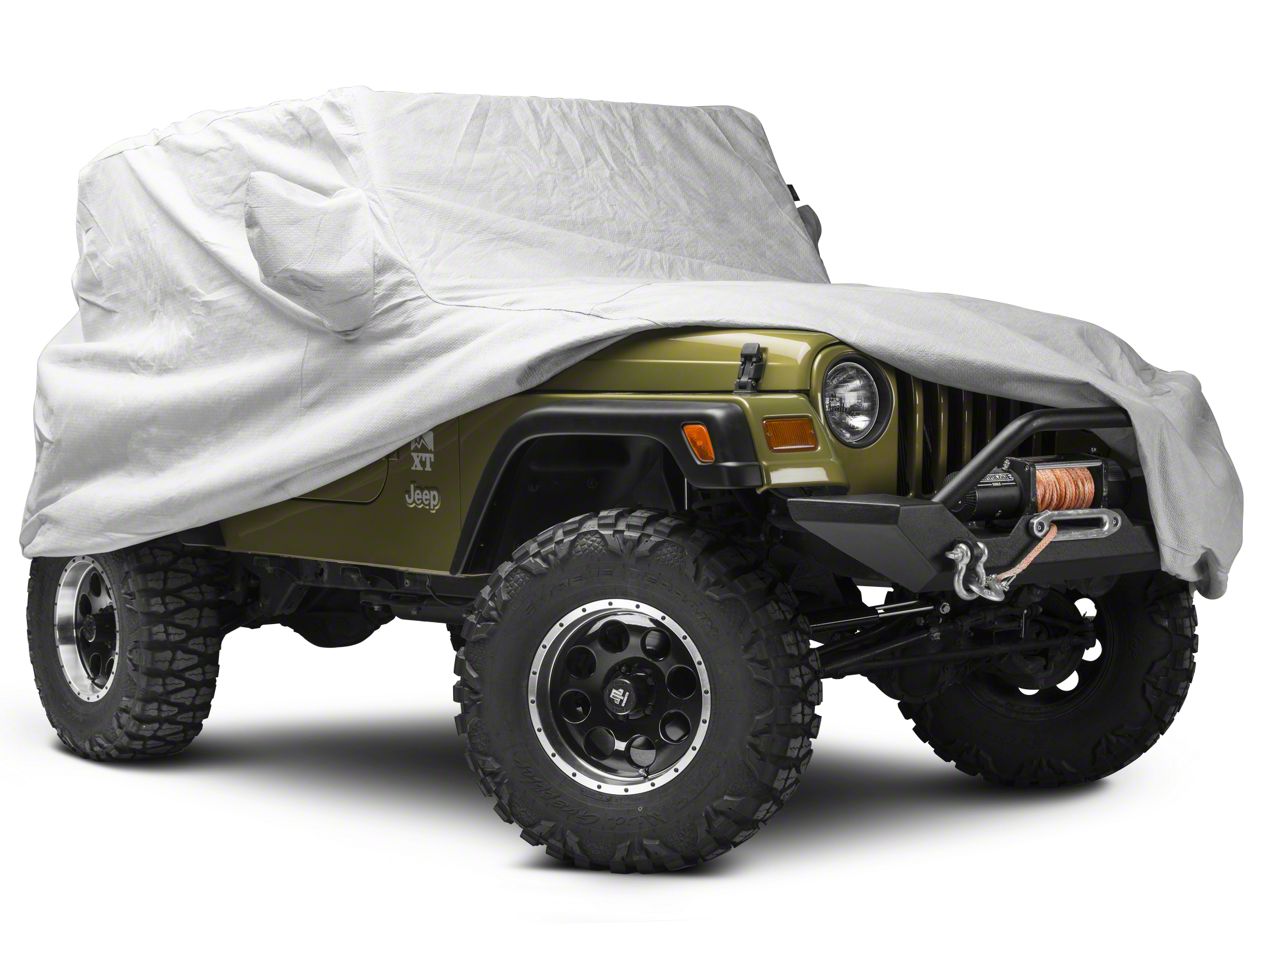 桜舞う季節 Covercraft Custom Fit Car Cover for Jeep Cherokee UltraTect Series  Fabric, Tan＿並行輸入